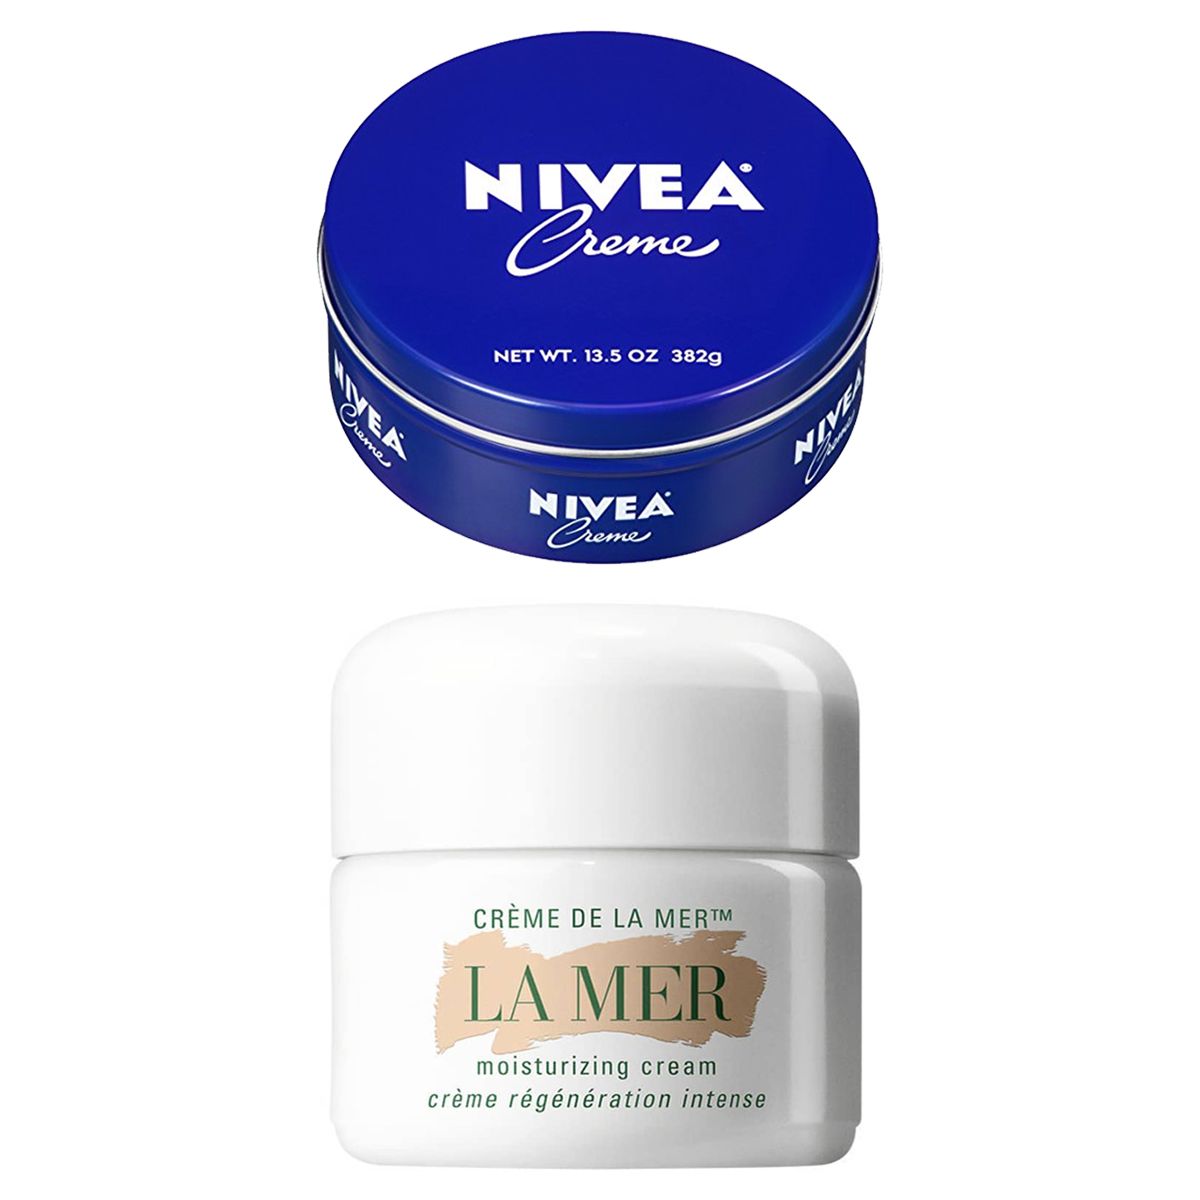 Cremé De La Mer vs. Nivea Creme: The Best Anti-Aging Products